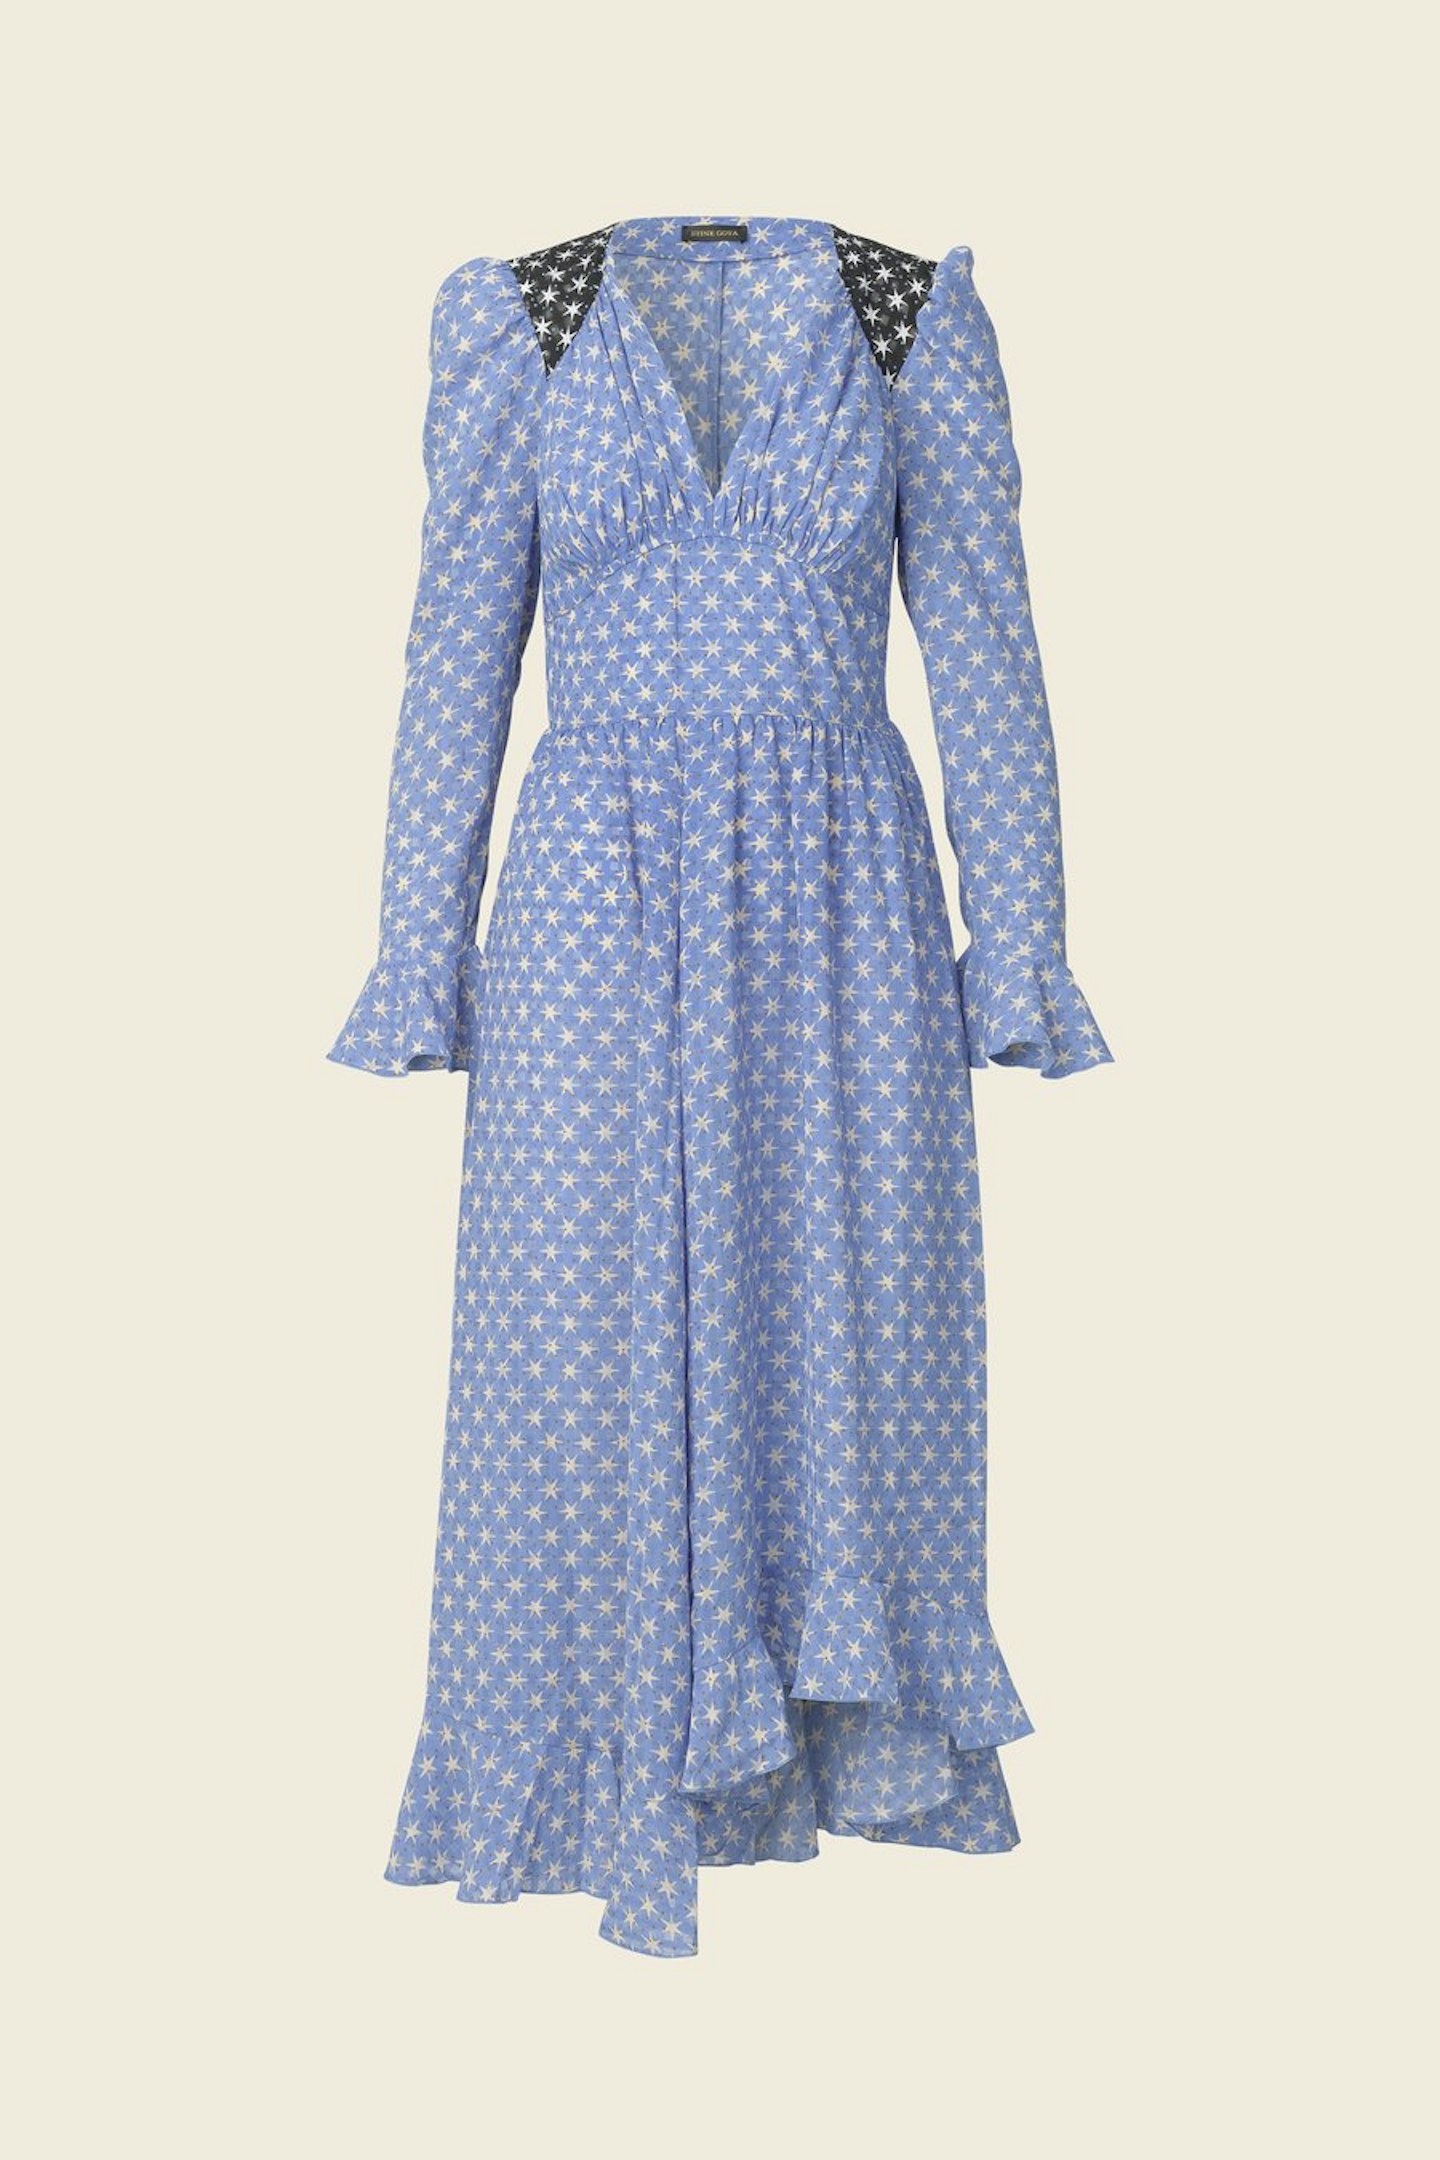 Stine Goya, Freesia Dress, £212